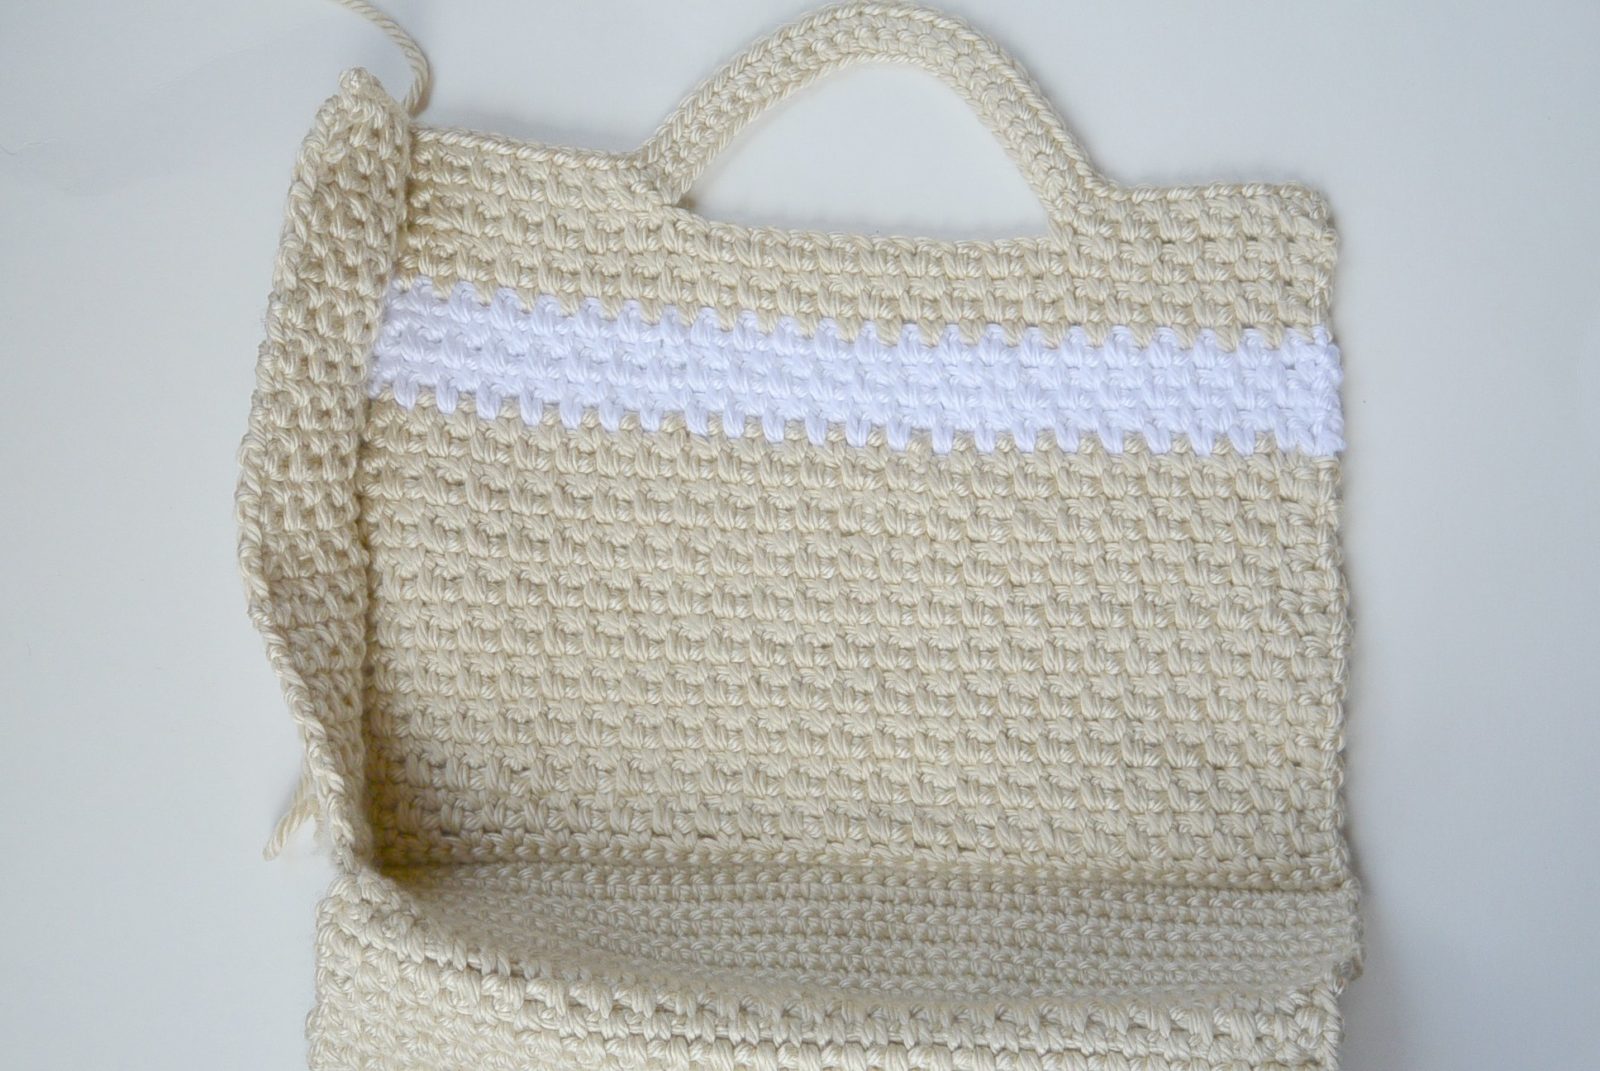 Small Purse Crochet Pattern // Crochet Purse for Girls // Small Bag Crochet  Pattern // Simple Crochet Purse Pattern - Etsy